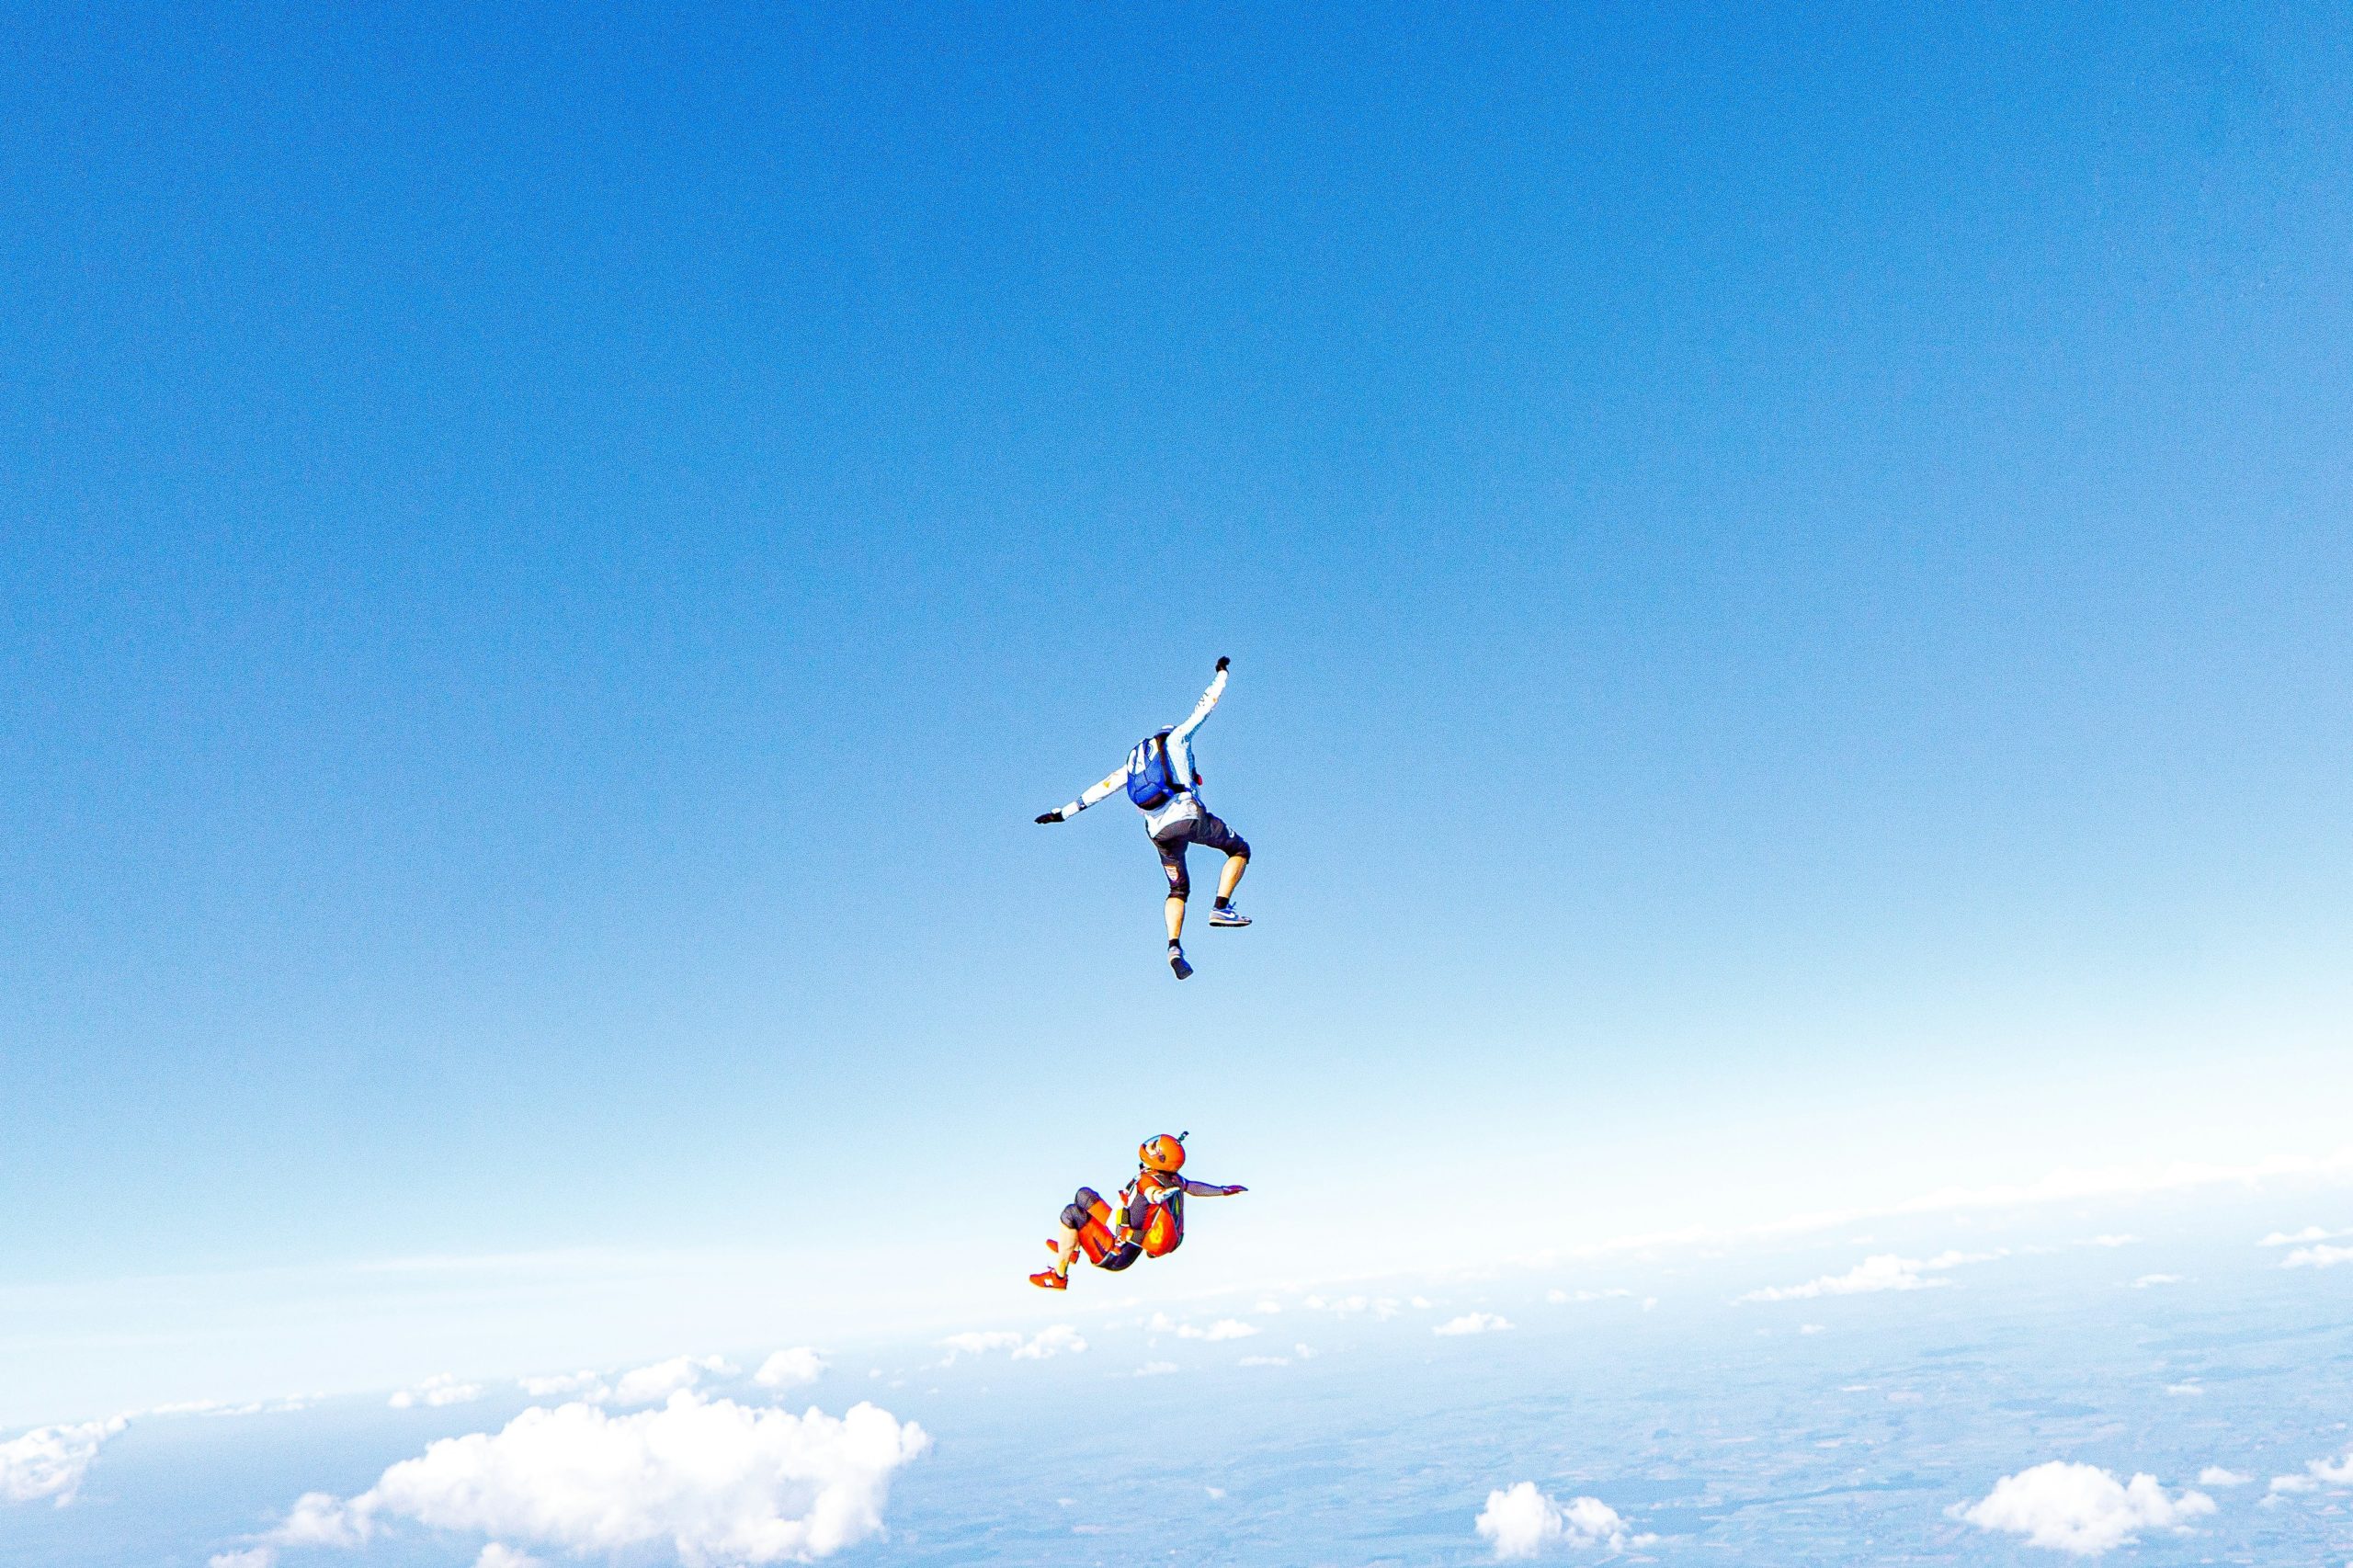 Un parachutiste en chute libre avec un bras levé et l'autre tendu vers le bas, et un second parachutiste en position horizontale en dessous, le tout sur un fond de ciel bleu clair parsemé de nuages et de la terre en vue lointaine en dessous.